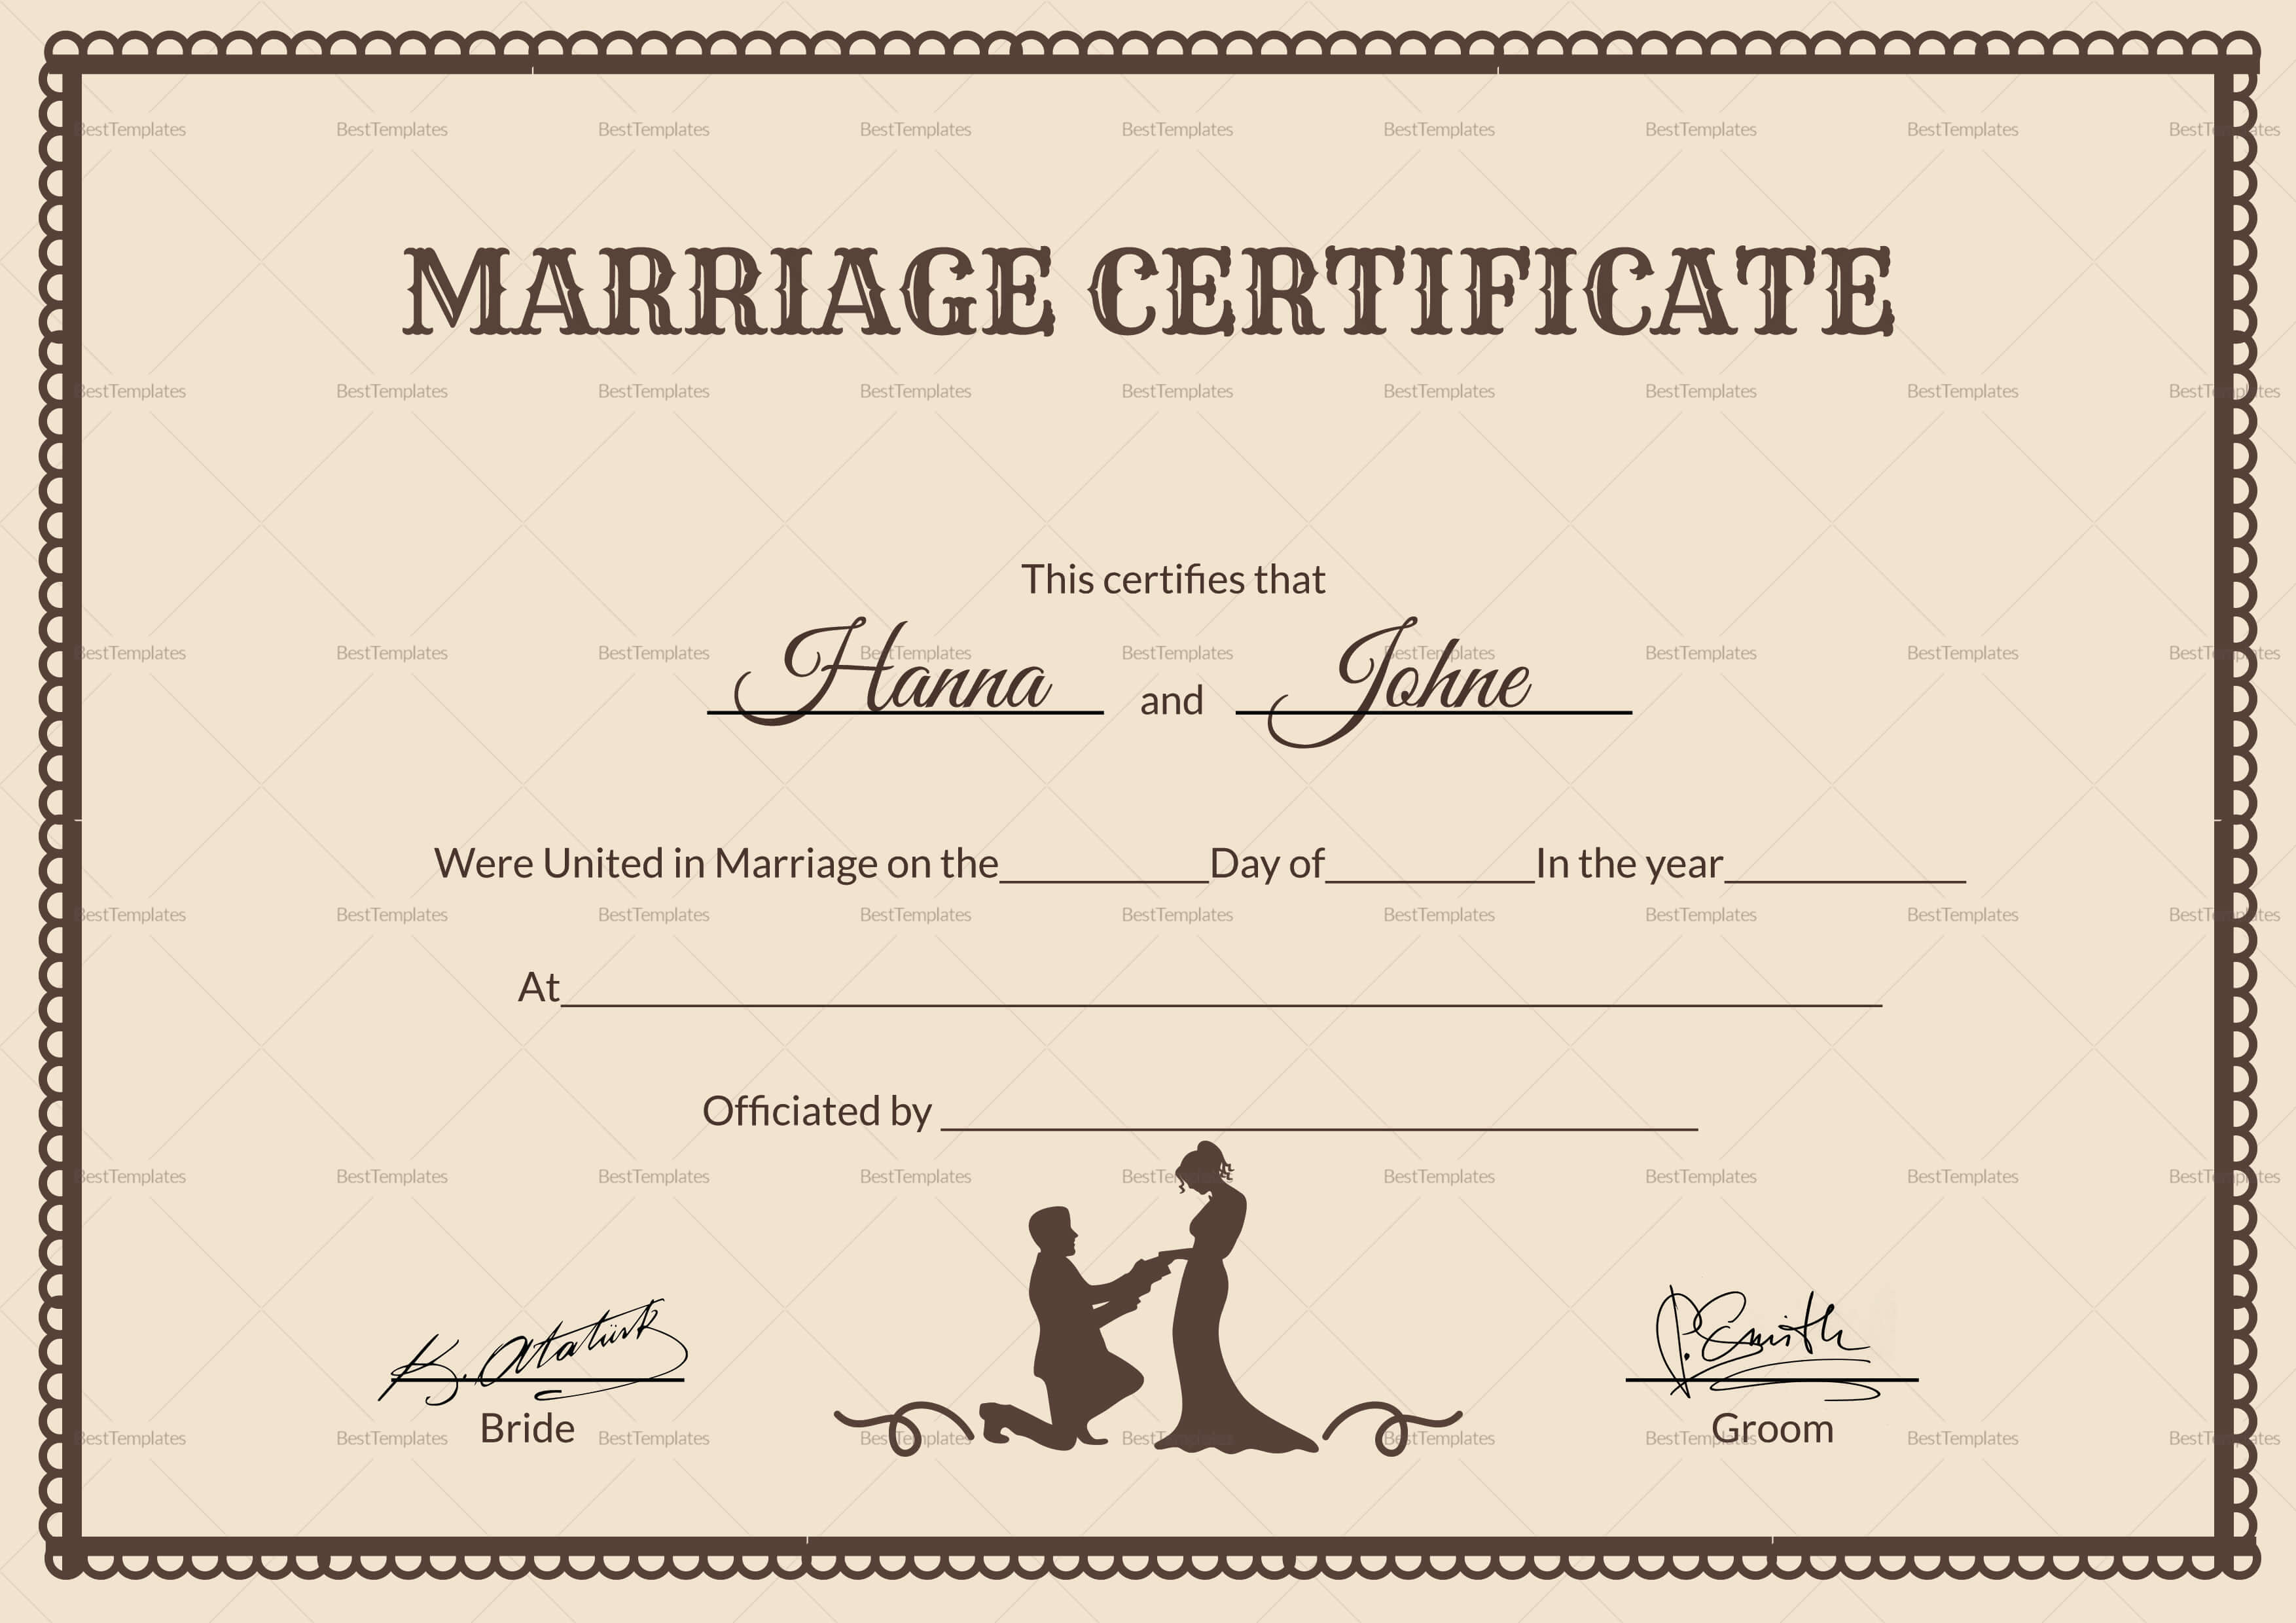 017 Template Ideas Marriage Certificate Beautiful Of Free With Blank Marriage Certificate Template